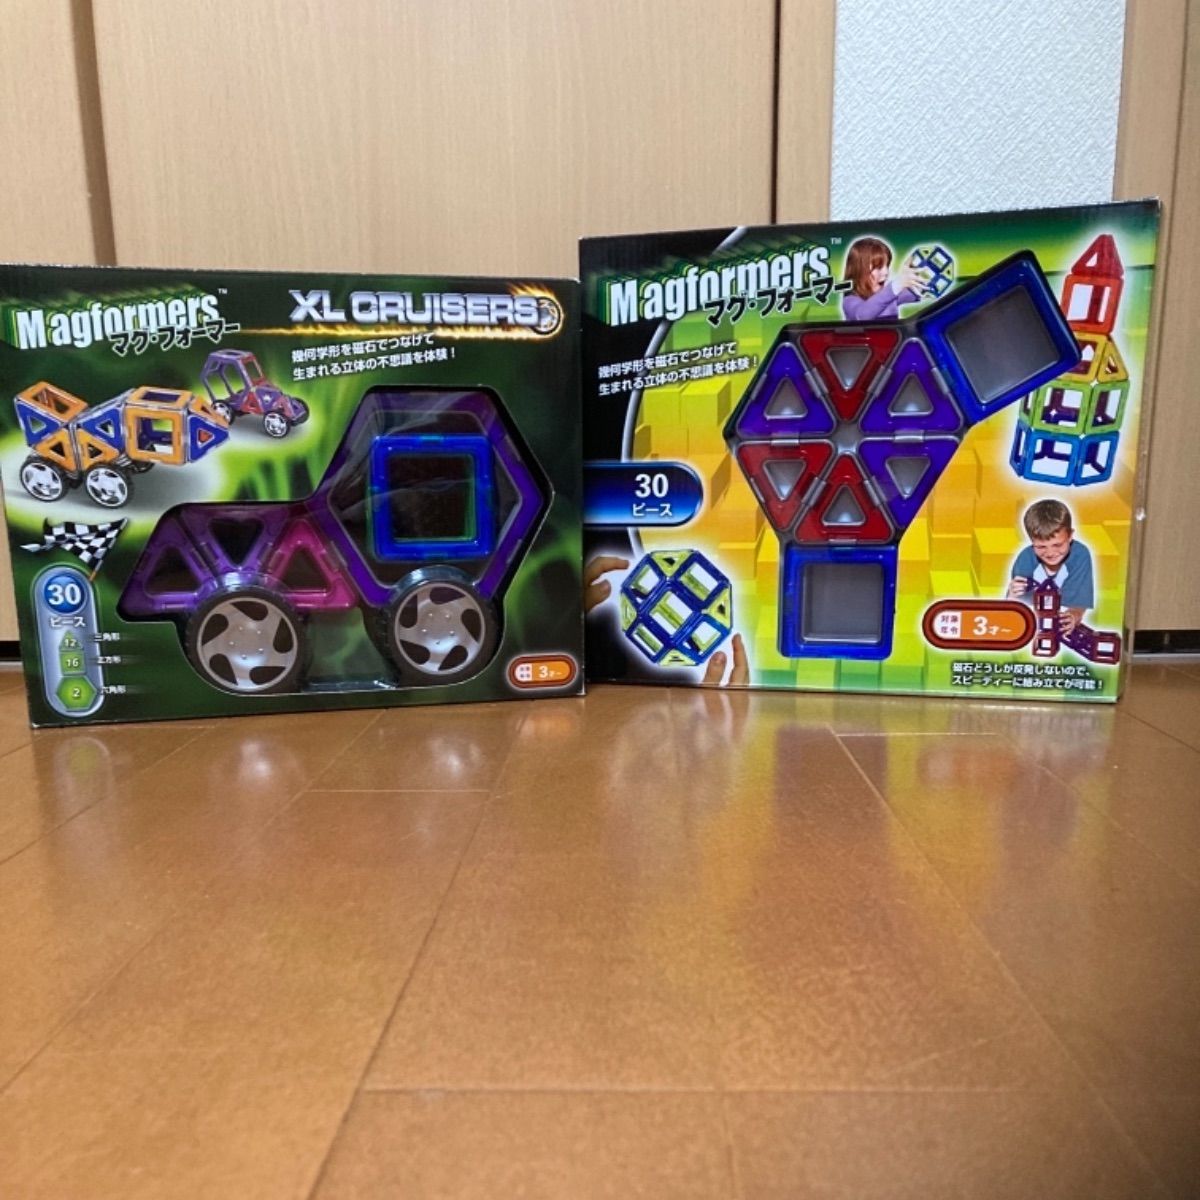 ☆ Magformers マグフォーマー XL クルーザー (0220450150) - 知育玩具